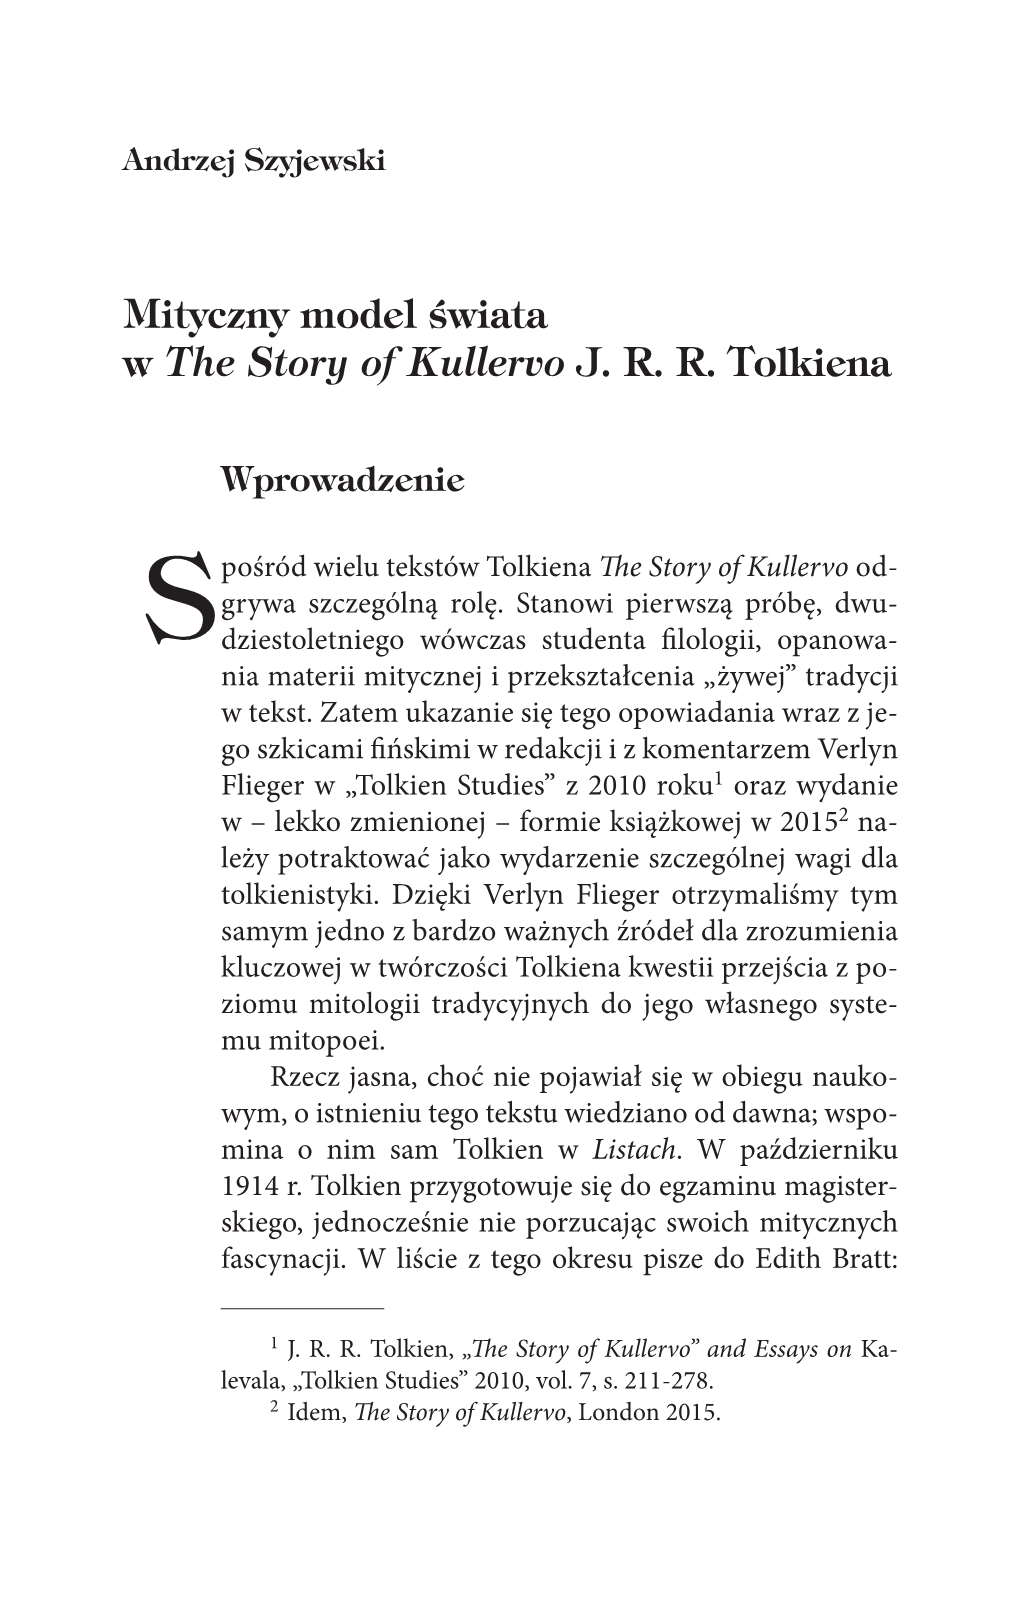 Mityczny Model Świata W the Story of Kullervo J. R. R. Tolkiena